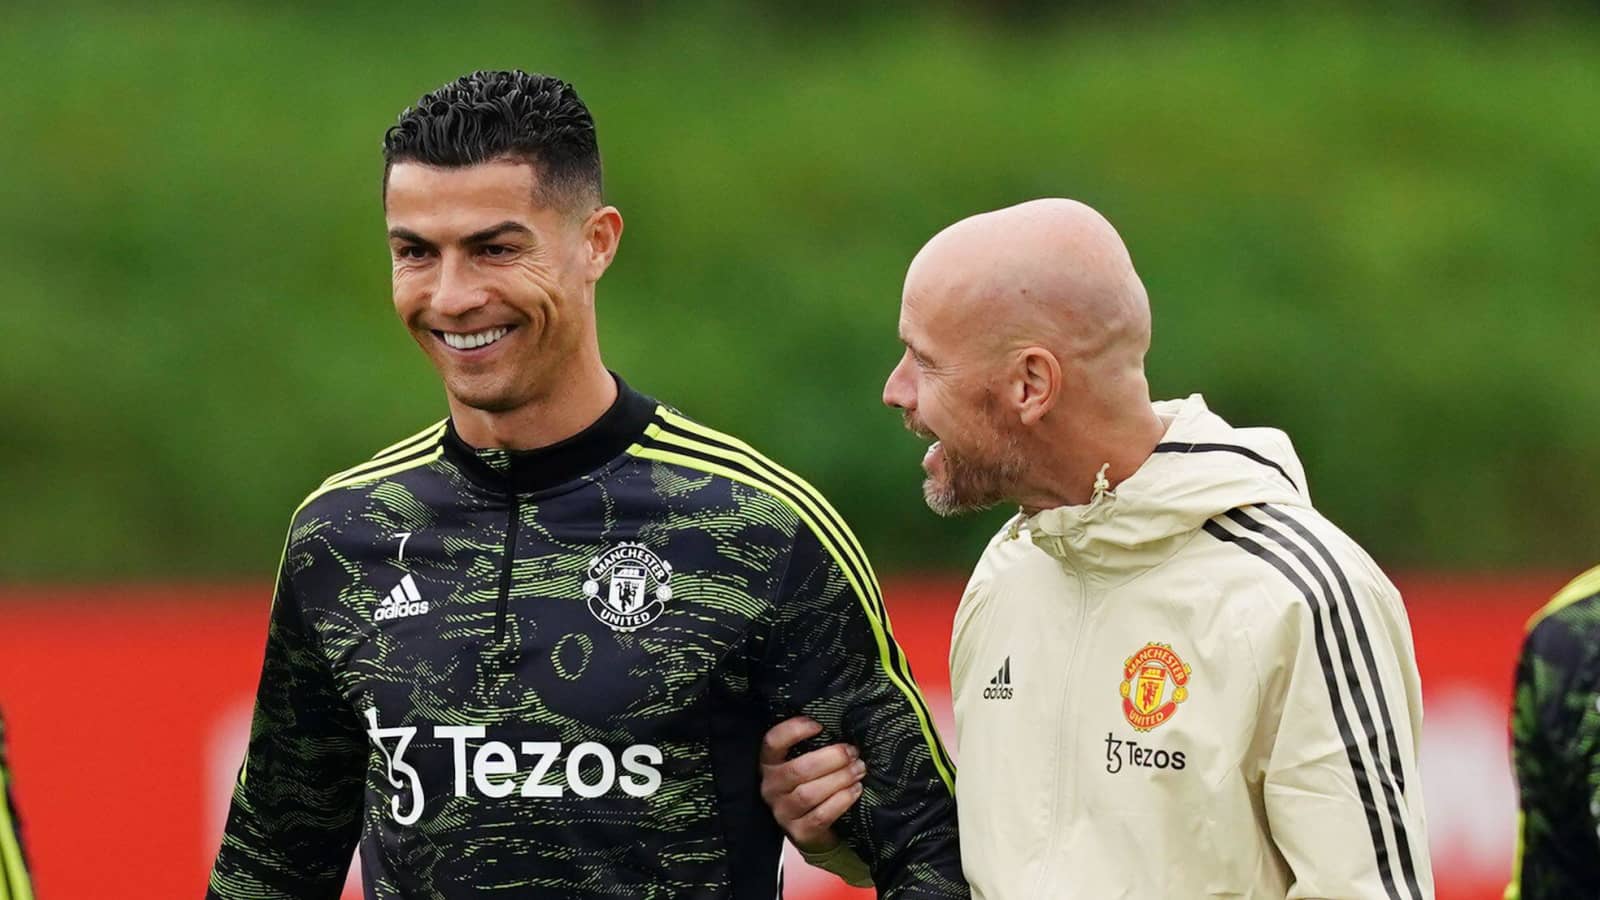 Toàn văn bài phỏng vấn của Ronaldo với Piers Morgan - Phần 2 - Ảnh 10